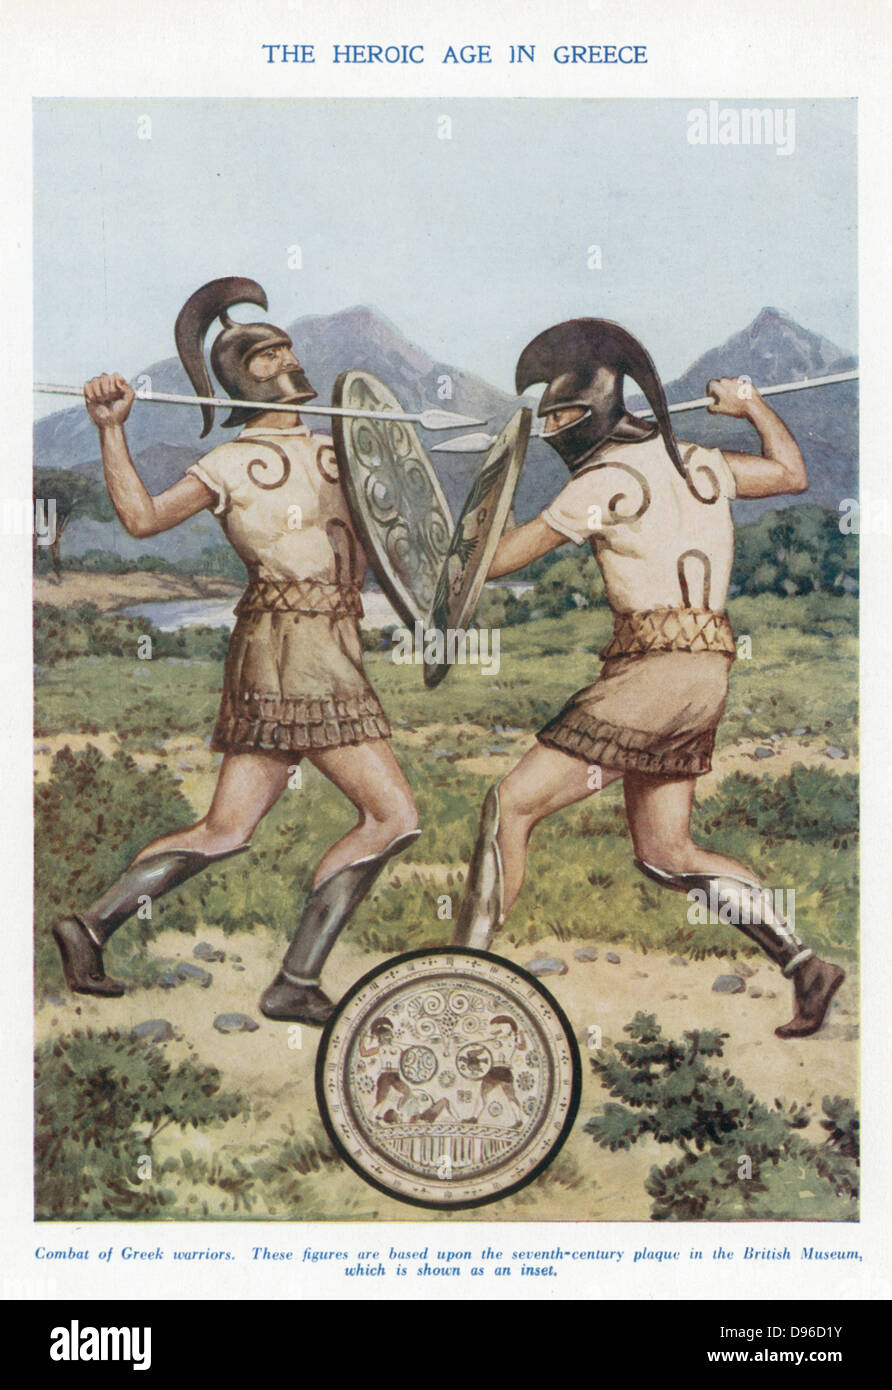 Griechische Krieger im Nahkampf. Anfang des 20. Jahrhunderts Abbildung basierend auf einer alten Darstellung. Stockfoto